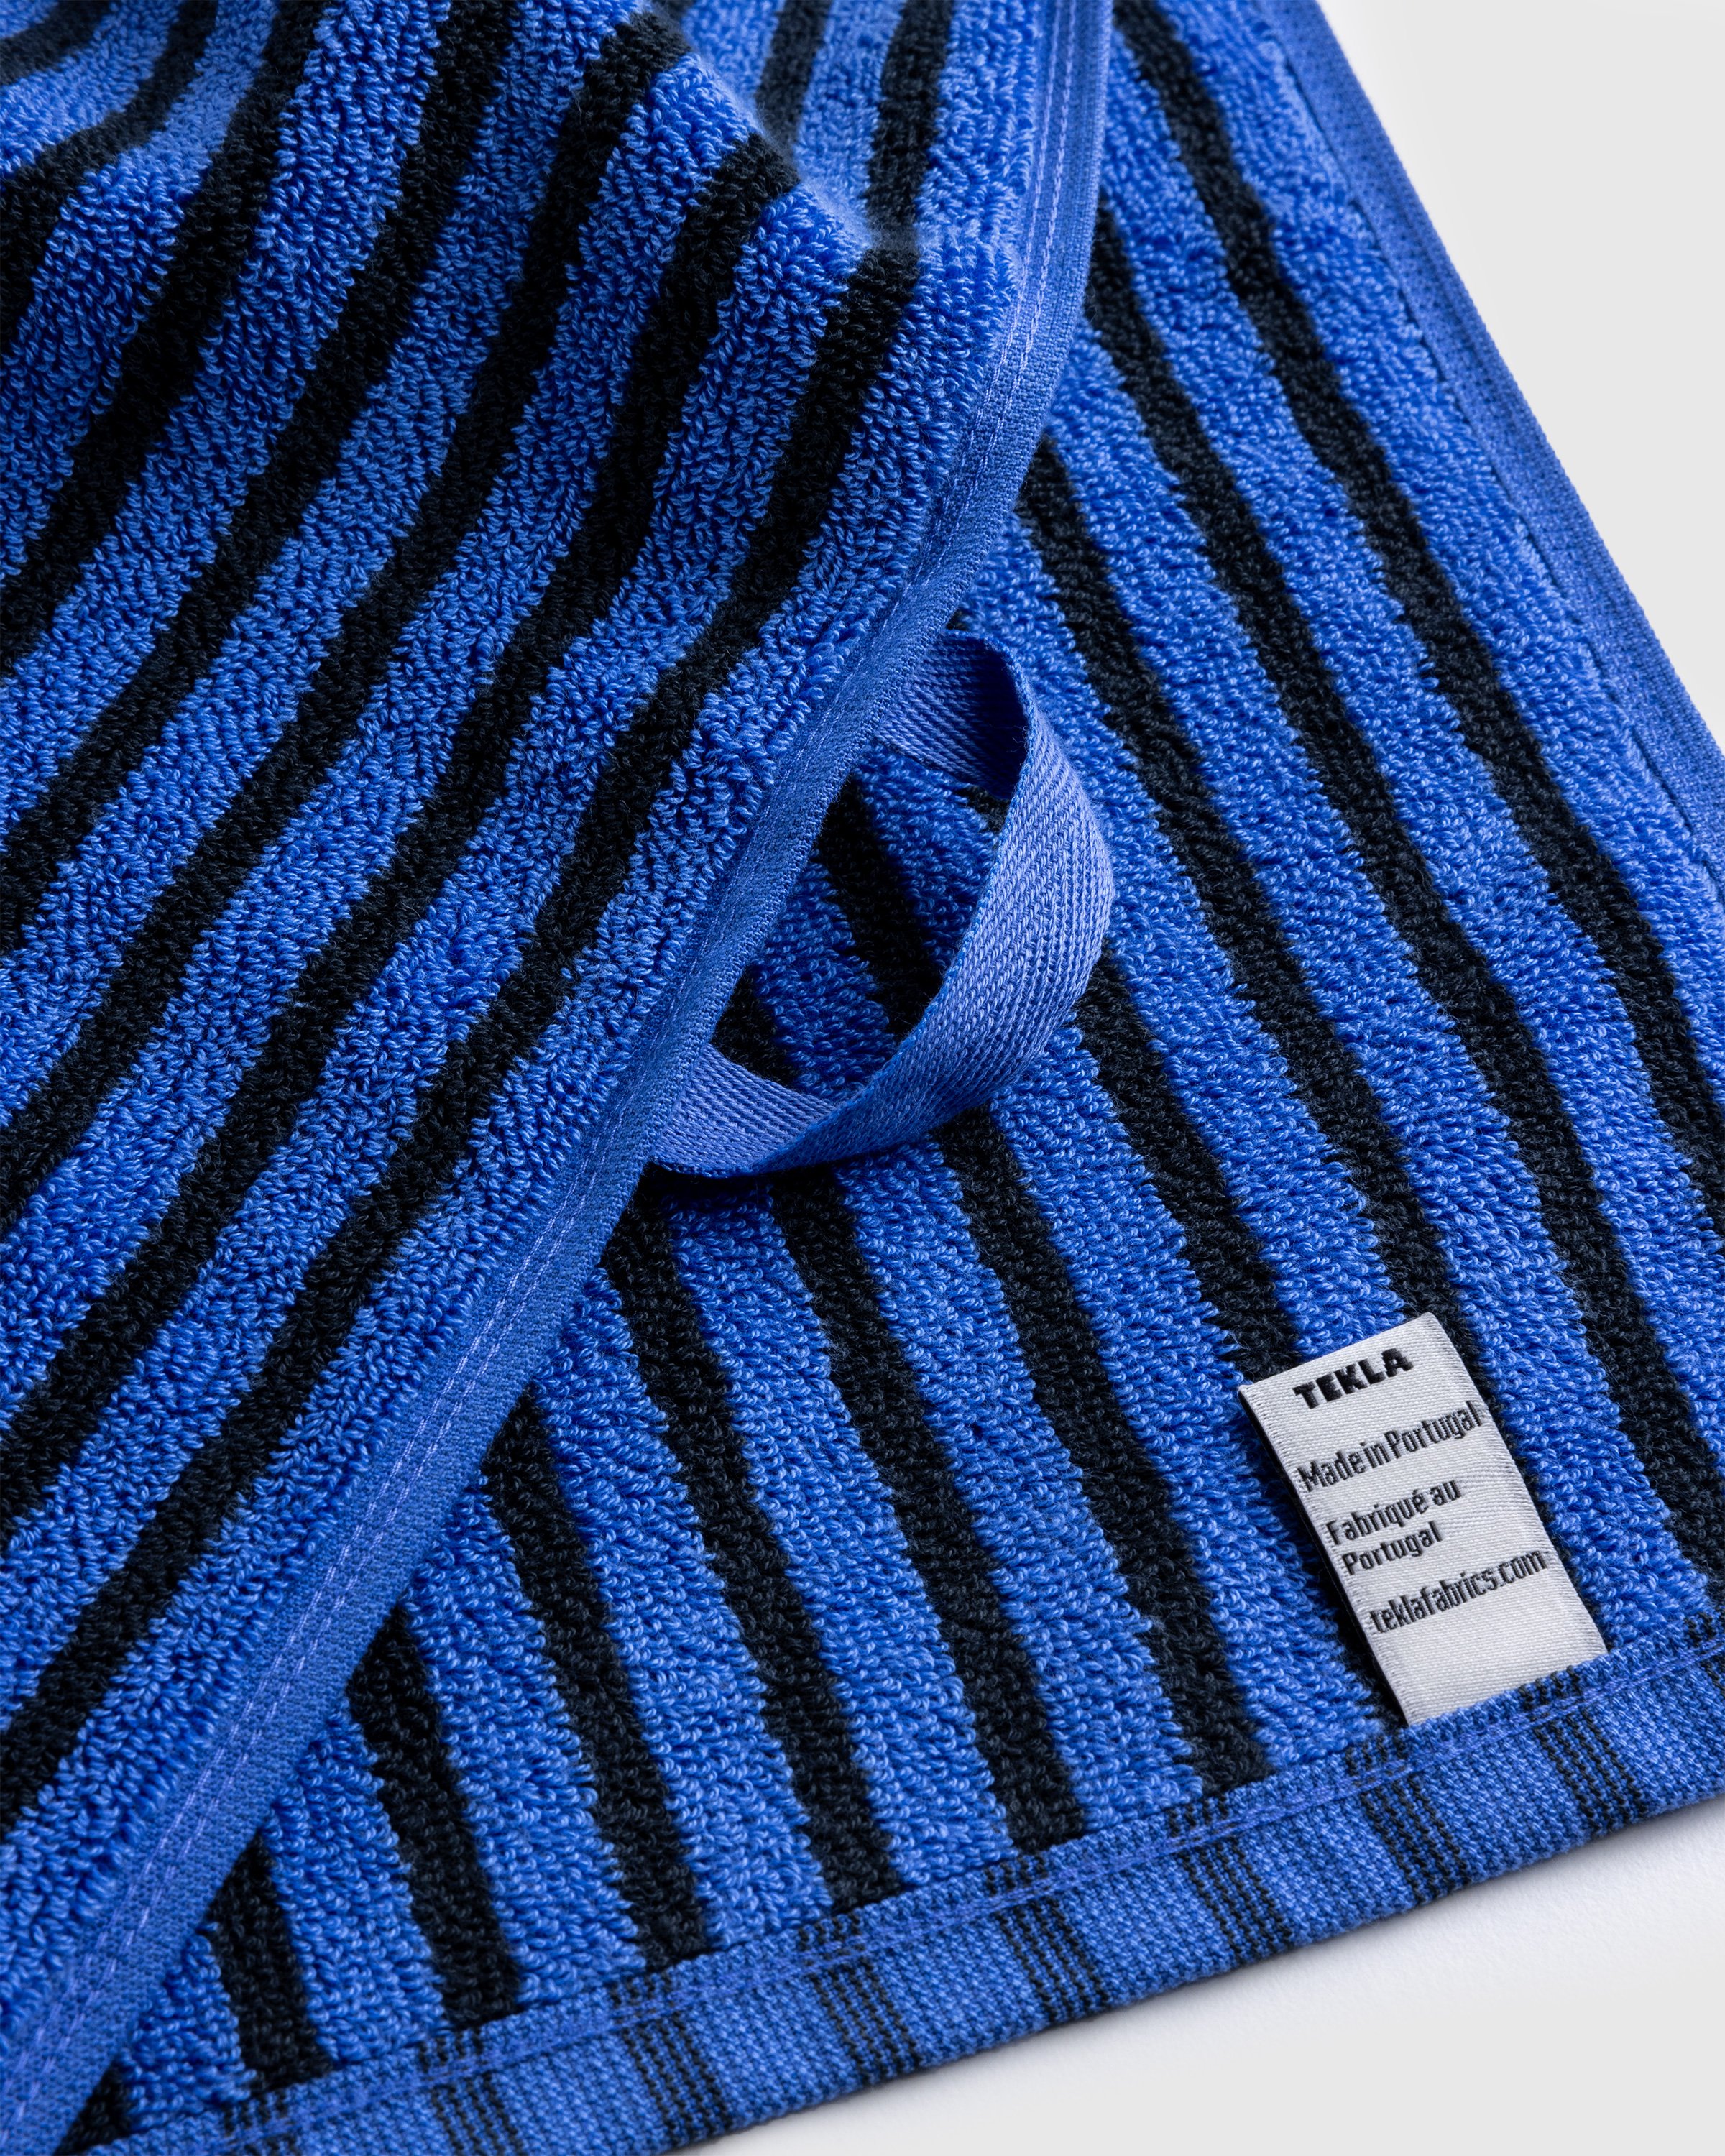 Tekla - Guest Towel Blue&Black - Lifestyle - Blue - Image 4